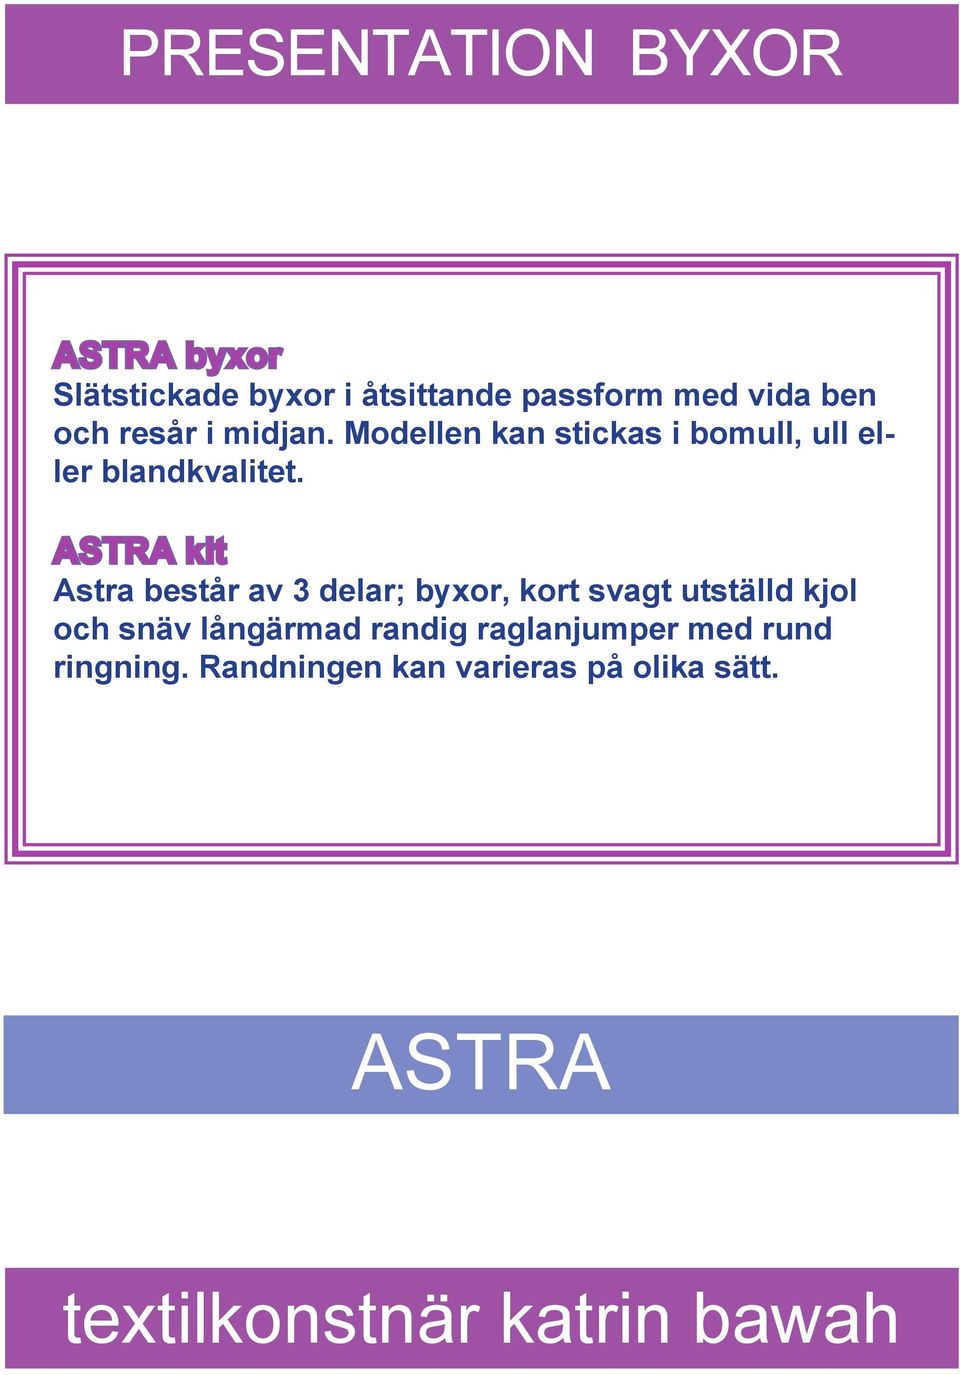 ASTRA kit Astra består av 3 delar; byxor, kort svagt utställd kjol och snäv